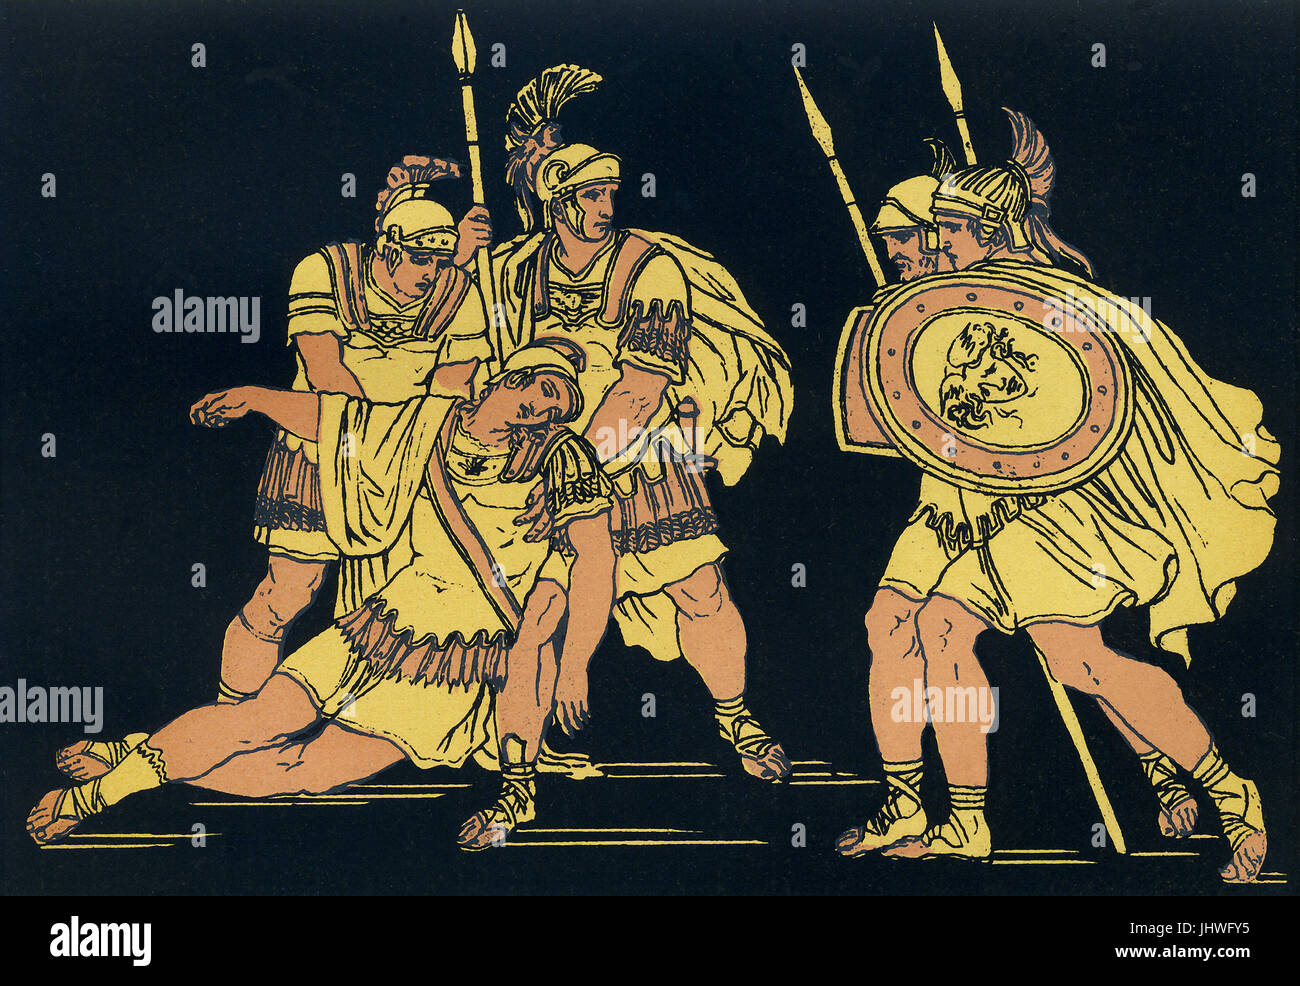 Lausus era il figlio del re etrusco Mezentius. Egli ha combattuto contro Enea e i suoi seguaci scampato Troy dopo i Greci conquistarono Troia e bruciato la città. Il racconto di questi guerrieri appare nell'Eneide di Virgilio. Dopo Enea Mezentius ferite in battaglia, Lausus proviene per la difesa di suo padre e di Enea poi colpisce entrambi. Questa illustrazione da circa 1900 mostra Enea subito dopo l uccisione Lausus, quando egli esprime rammarico per Lausus' compagni per ciò che egli ha appena fatto. Foto Stock